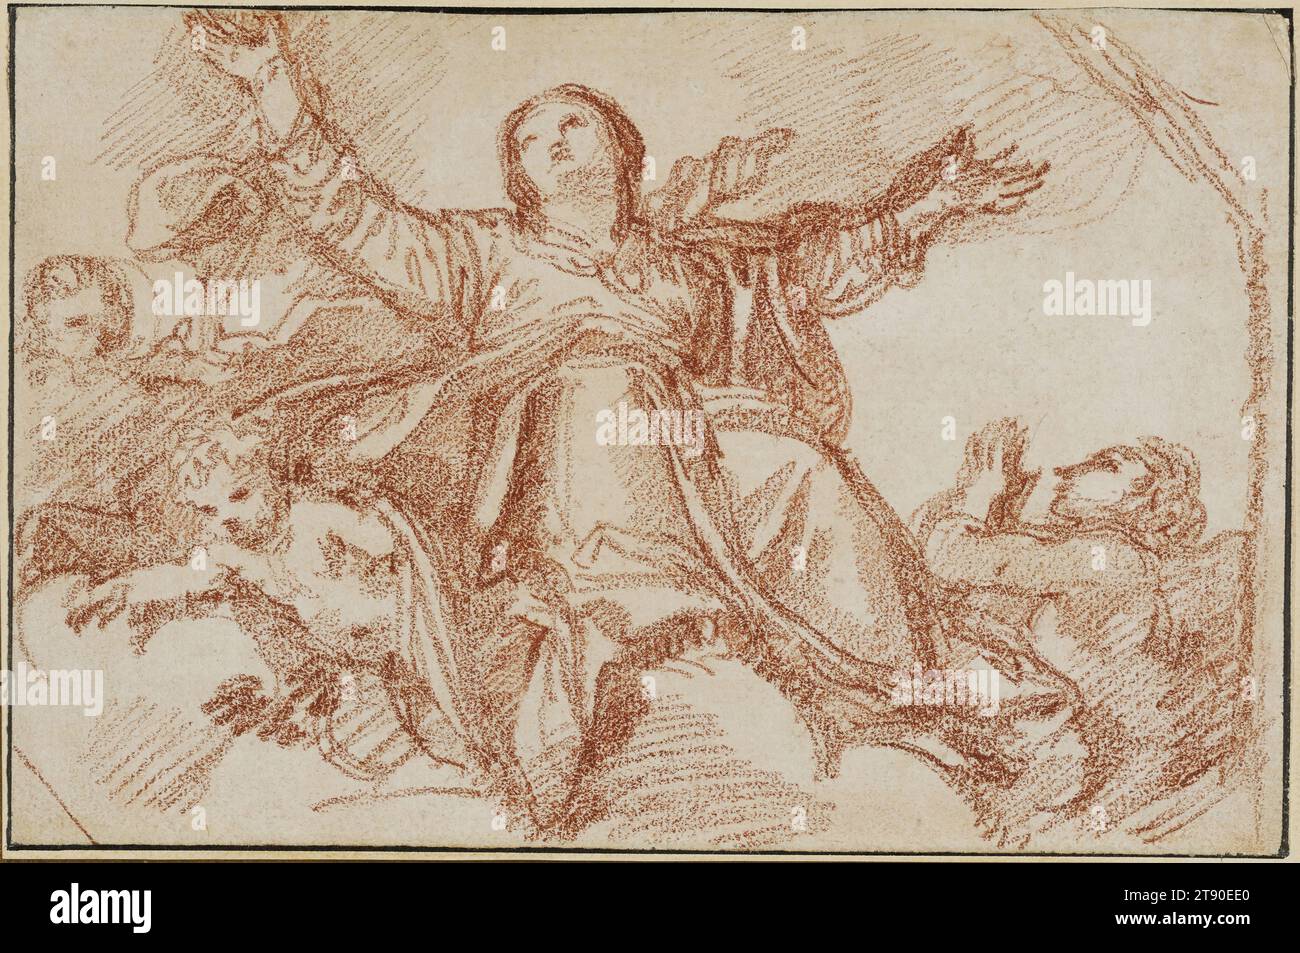 Assunzione della Vergine, 1759-1770, Jean-Robert Ango; artista: Dopo Domenichino Zampieri; artista: Precedentemente attribuito a Jean-Honoré Fragonard, francese, 1732-1806, 5 1/2 x 8 1/2 in. (13,97 x 21,59 cm) (foglio)13 1/4 x 16 x 1" (33,66 x 40,64 x 2,54 cm) (cornice esterna), gesso rosso, Francia, XVIII secolo, l'artista francese Robert Ango visse a Roma nei primi anni '1760 e produsse innumerevoli disegni di gesso rosso copiando dipinti barocchi italiani del secolo precedente. La fonte di questo studio è Domenichino dipinto dell'assunzione dalla Vergine (1616-17) nella chiesa di Santa Maria a Roma Foto Stock